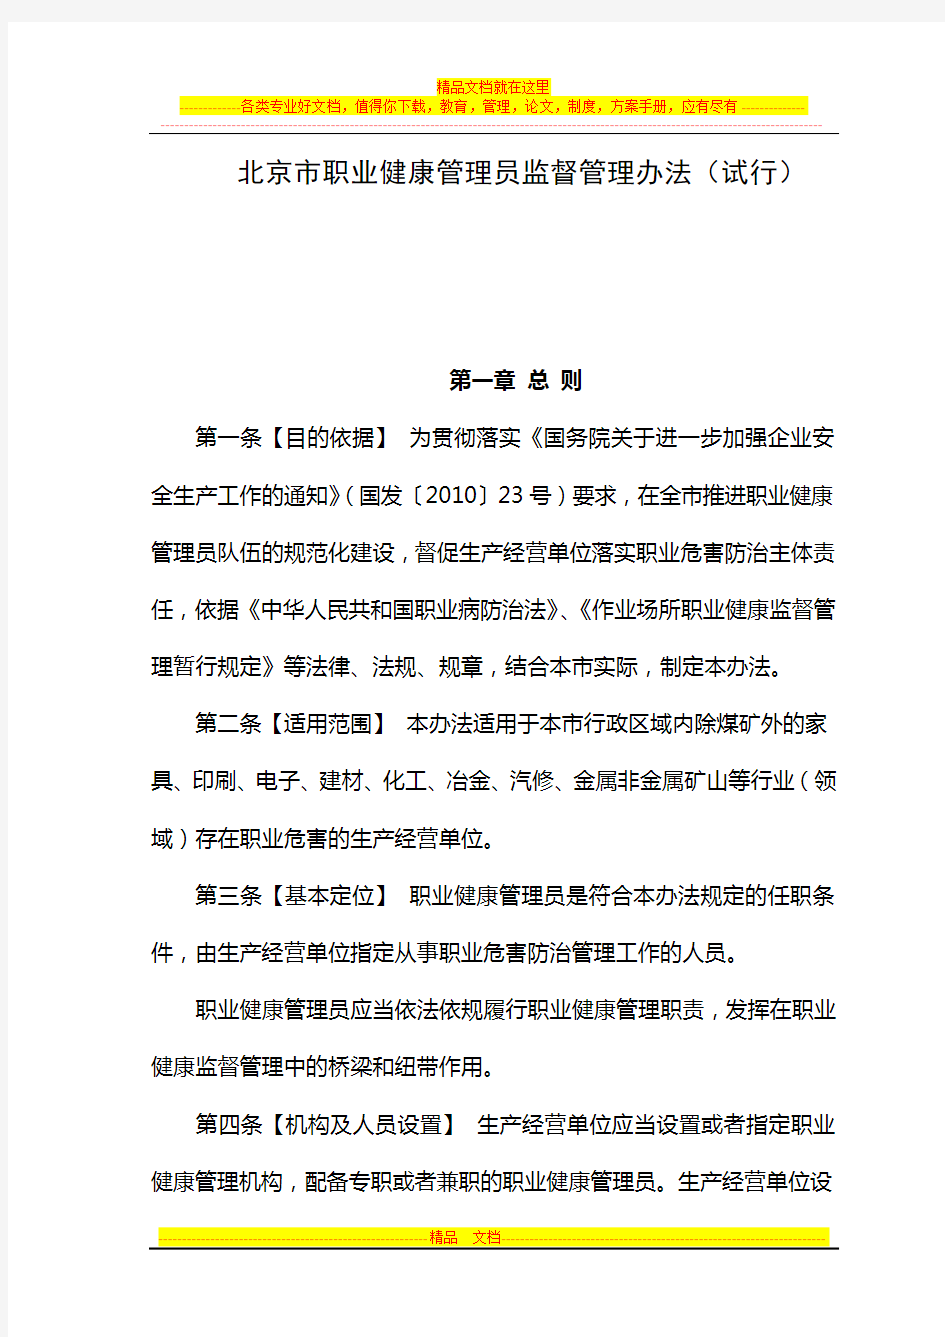 北京市职业健康管理员监督管理办法(试行)